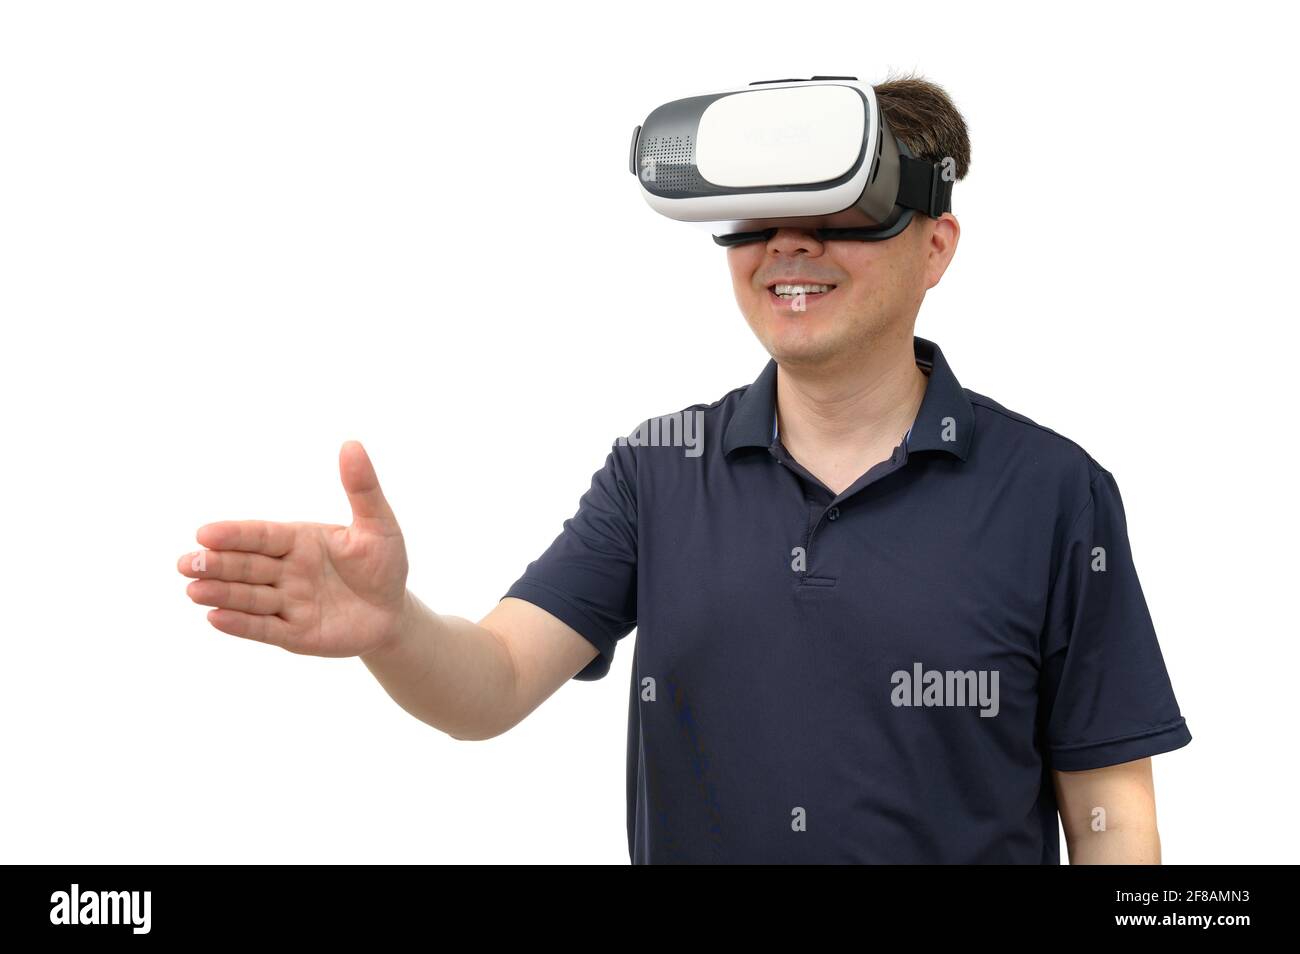 Homme portant des lunettes de réalité virtuelle. Prise de vue en studio, arrière-plan blanc. Banque D'Images